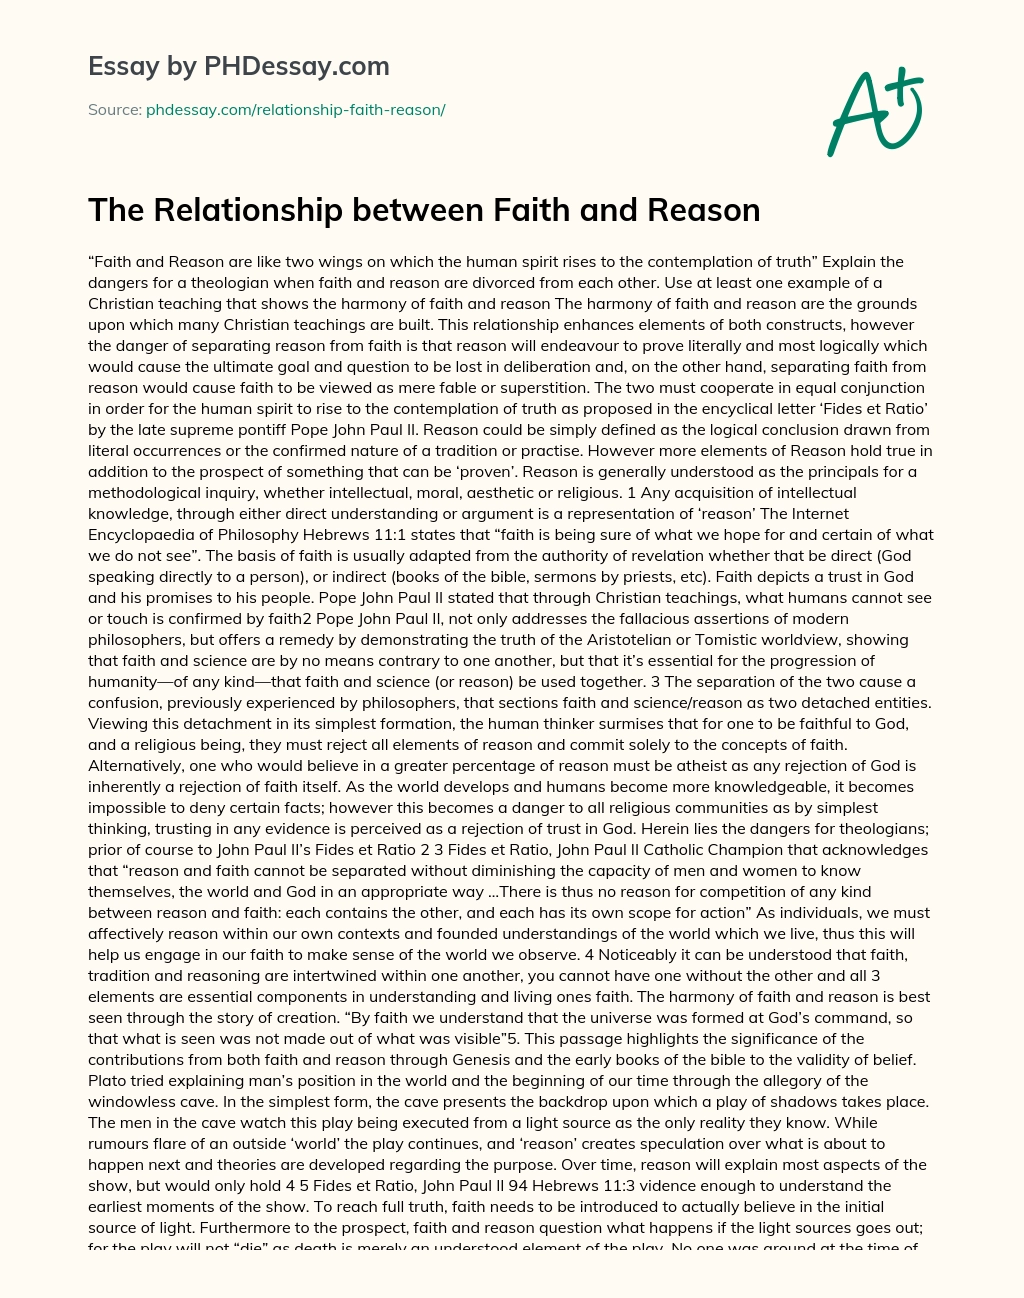 faith and reason essay